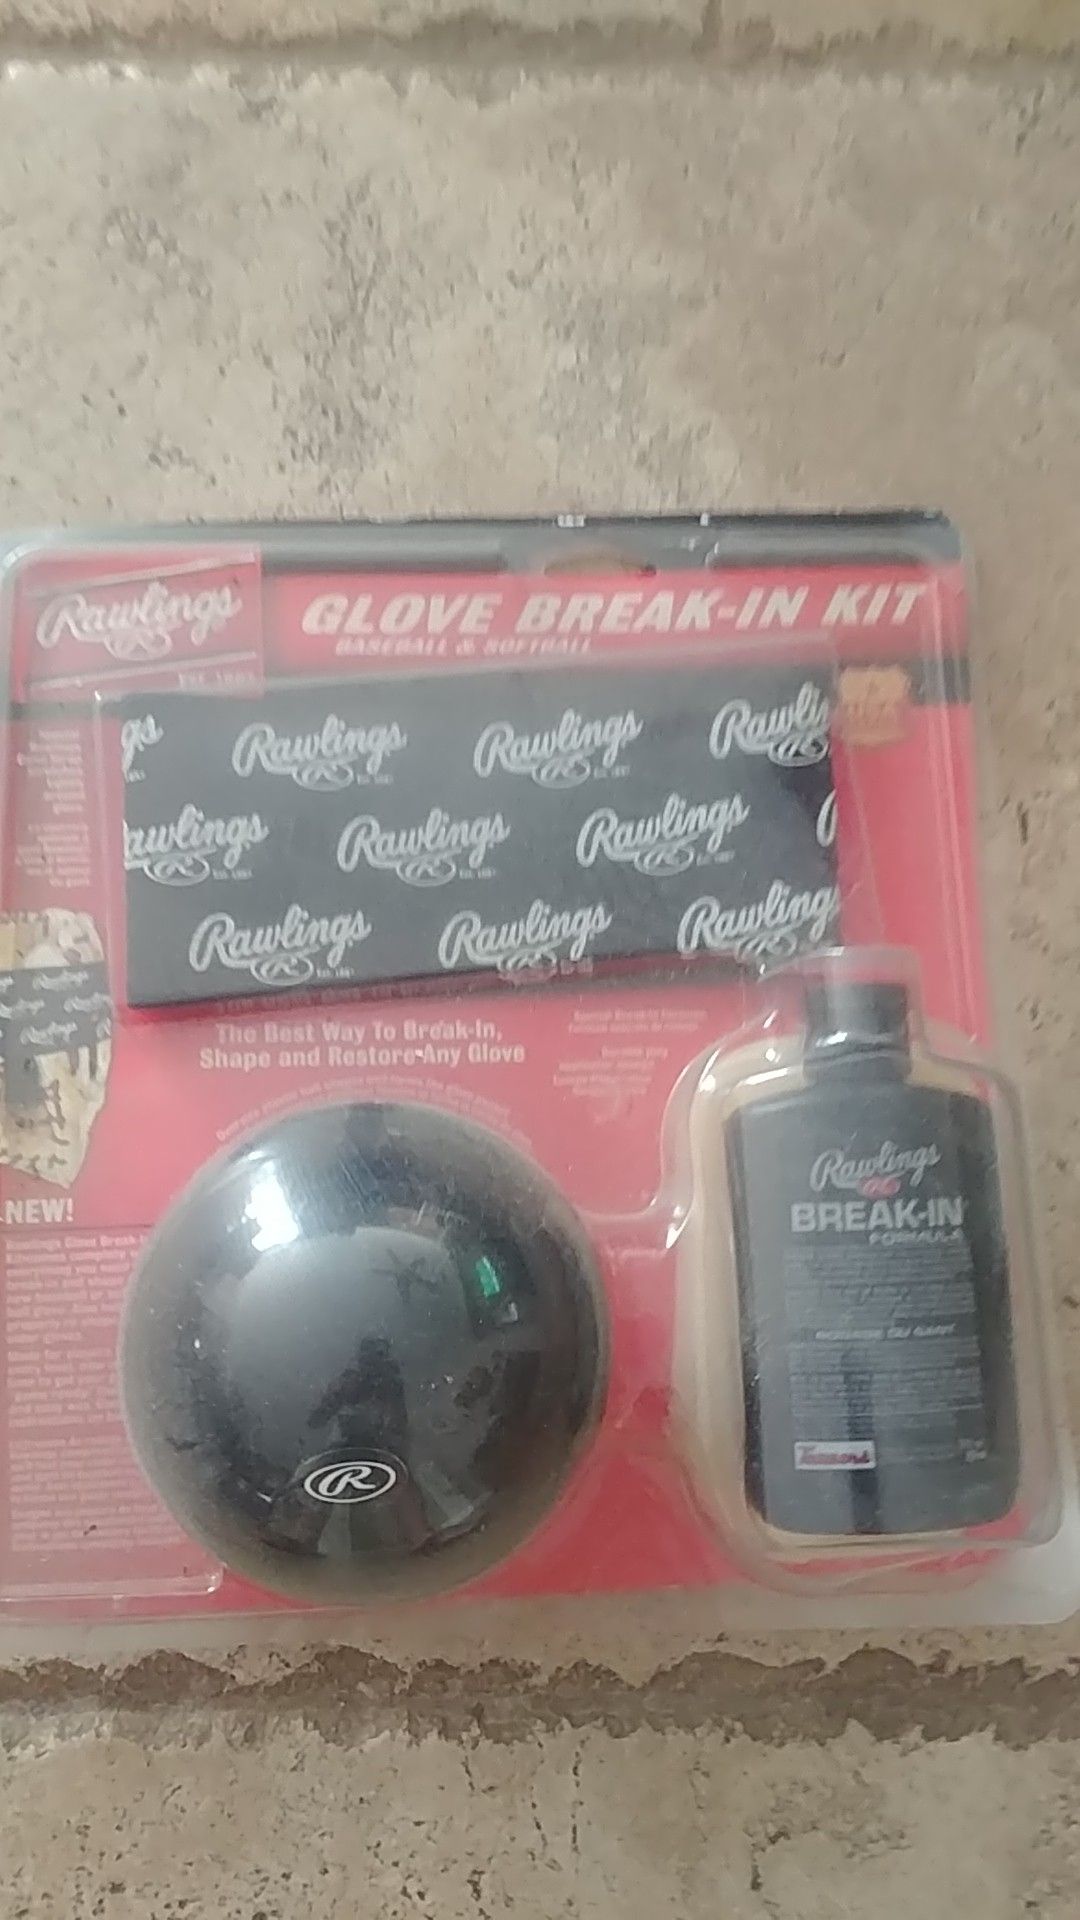 Baseball glove break-in kit